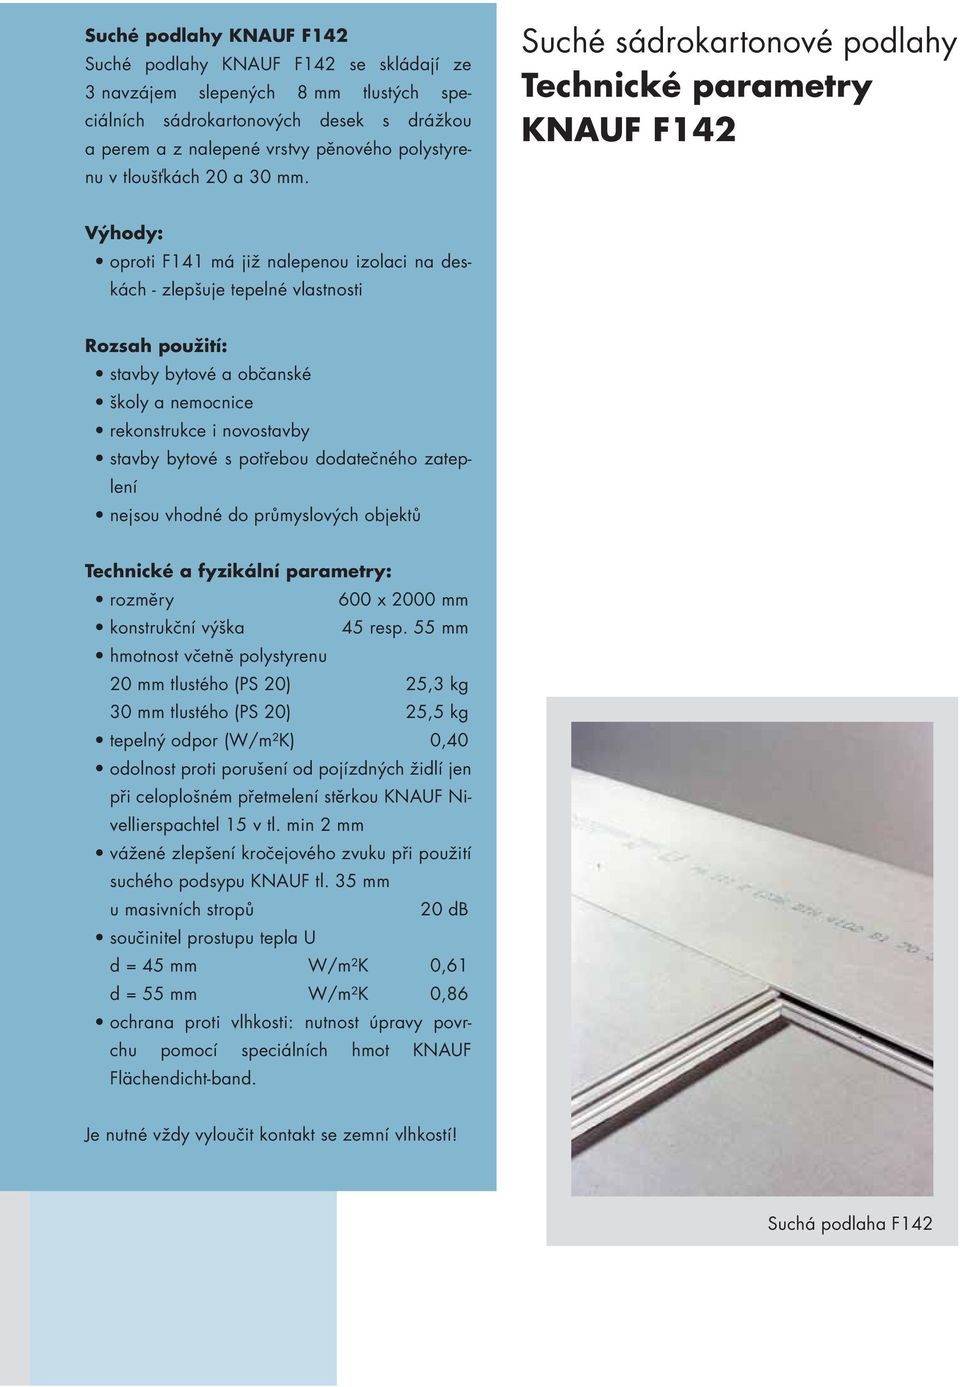 Suché sádrokartonové podlahy Technické parametry KNAUF F142 Výhody: oproti F141 má již nalepenou izolaci na deskách - zlepšuje tepelné vlastnosti Rozsah použití: stavby bytové a občanské školy a